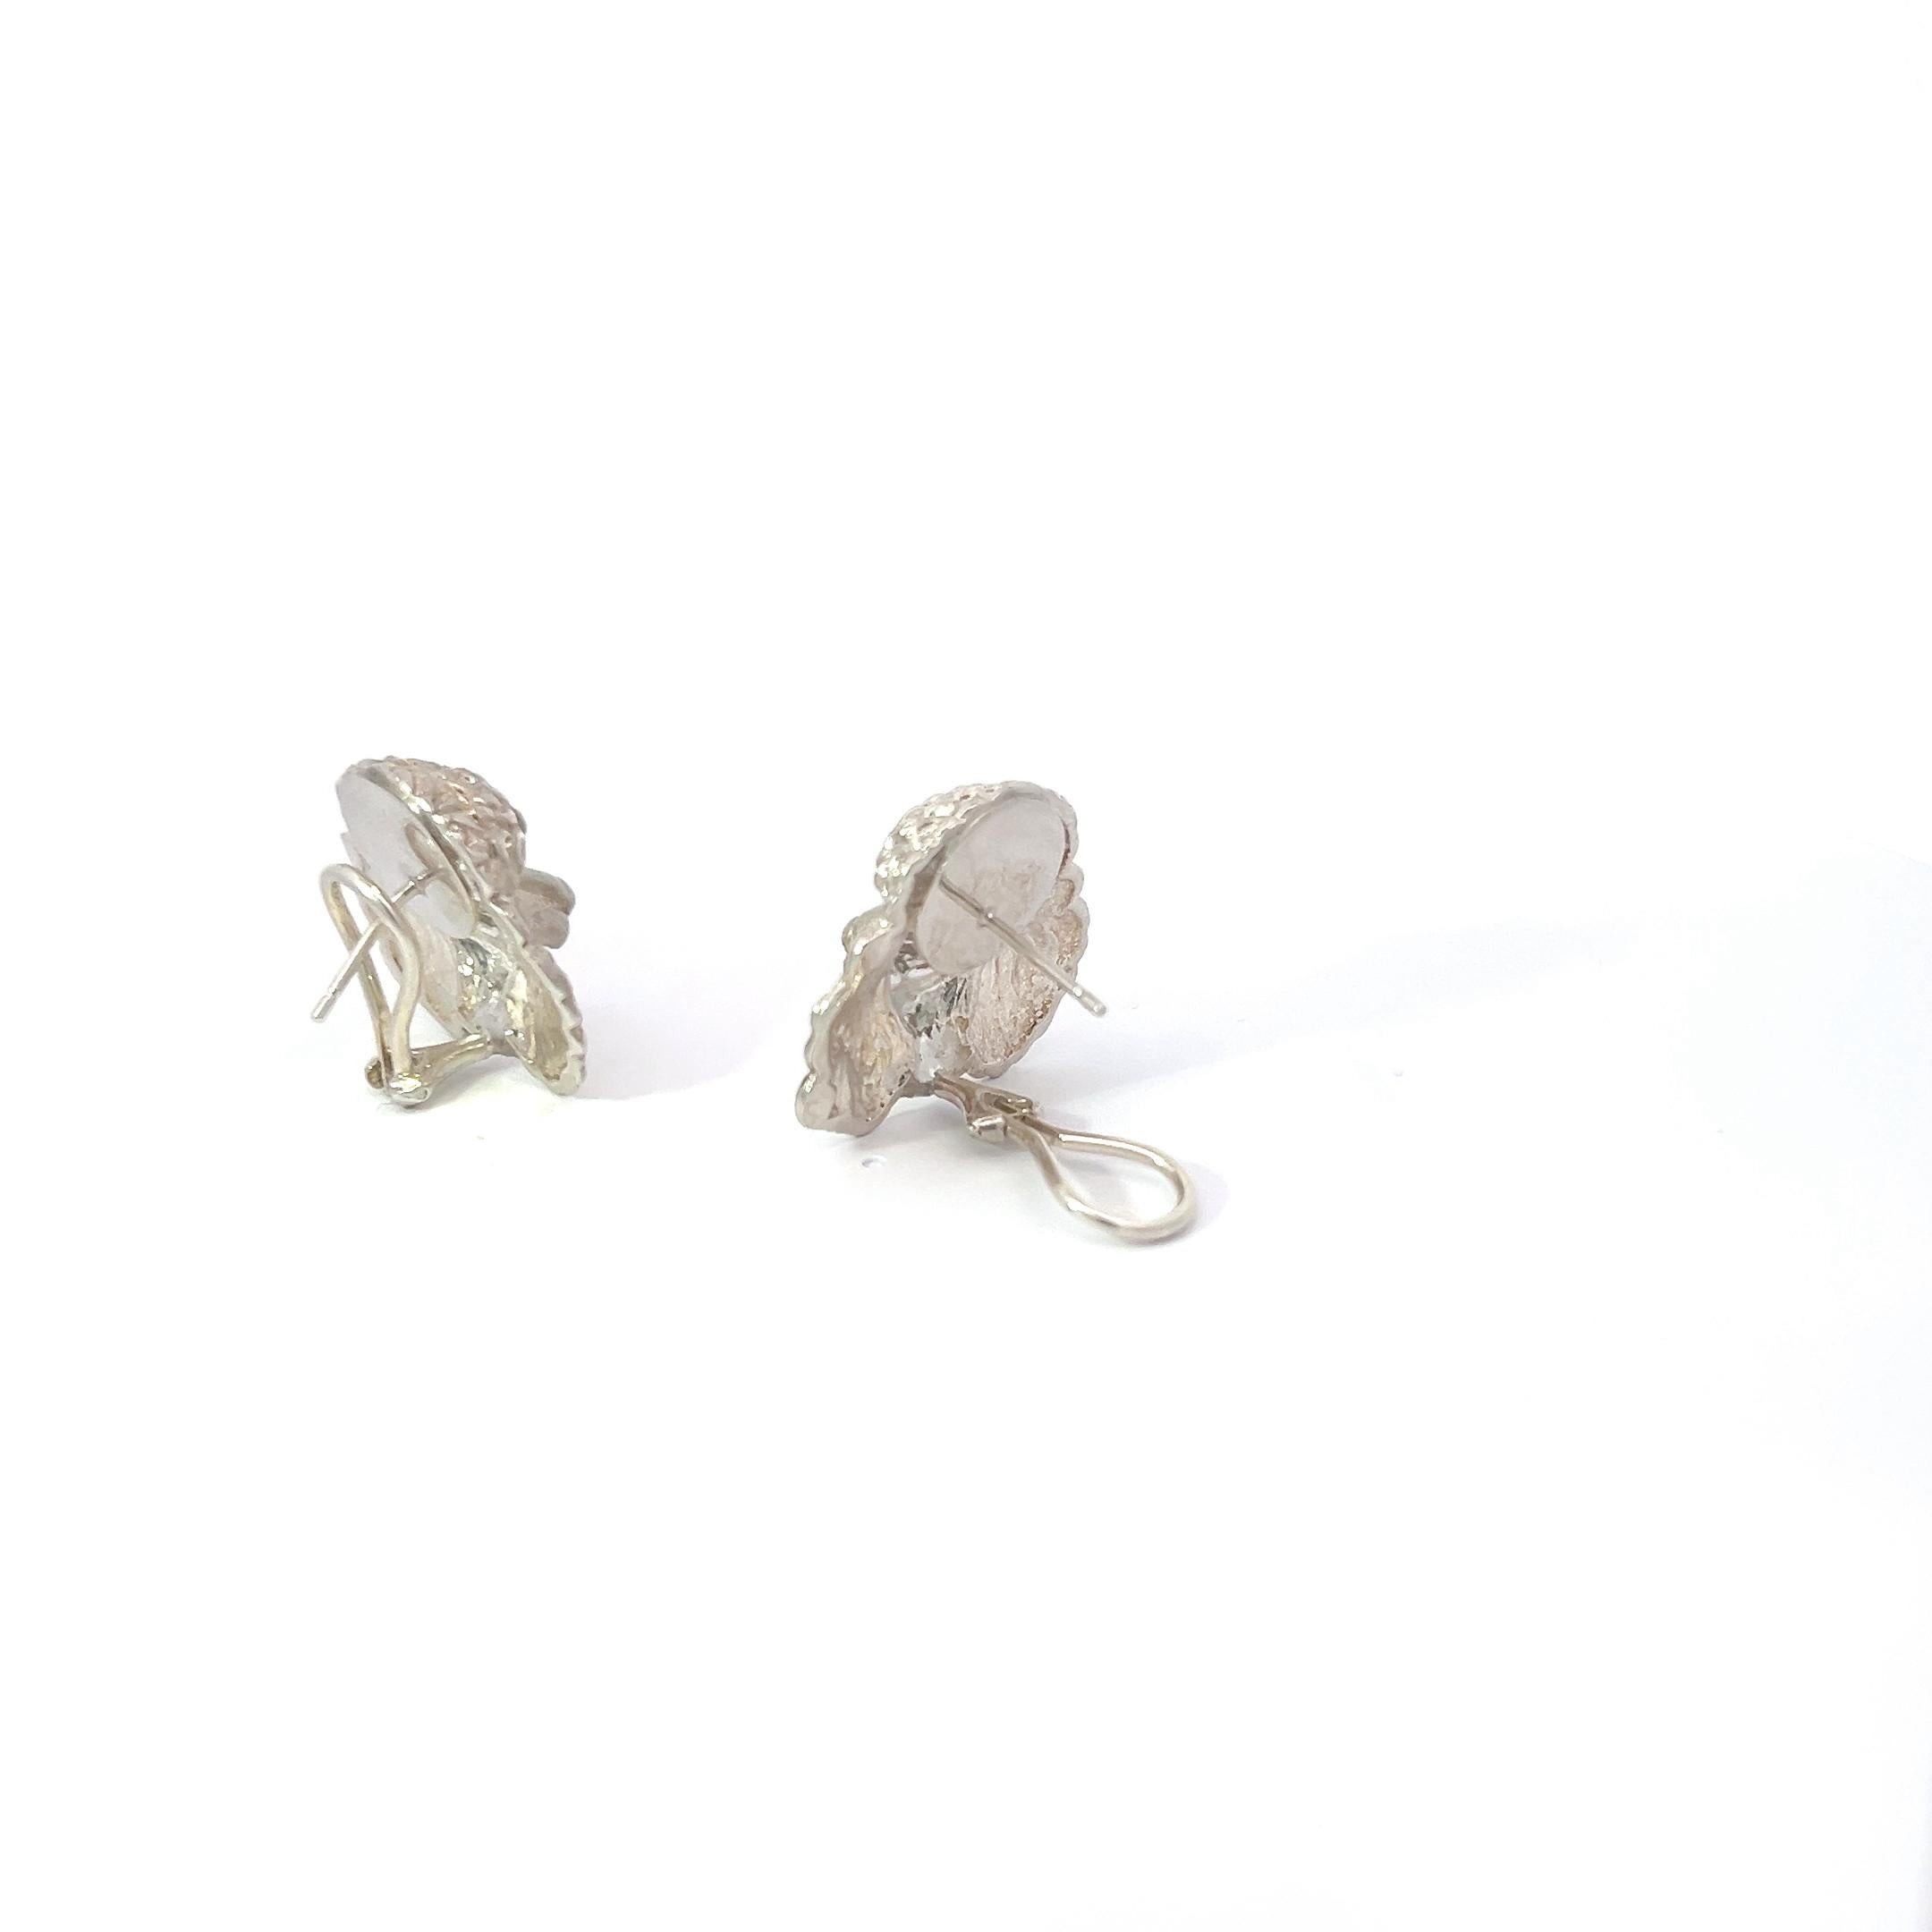 Verleihen Sie Ihrem Stil skurrilen Charme mit unseren Puddle Dog Ohrringen aus Sterlingsilber, einem Ausdruck verspielter Eleganz. Diese mit Präzision gefertigten Ohrringe mit liebenswerten Pudelhund-Motiven aus glänzendem Sterlingsilber fangen die